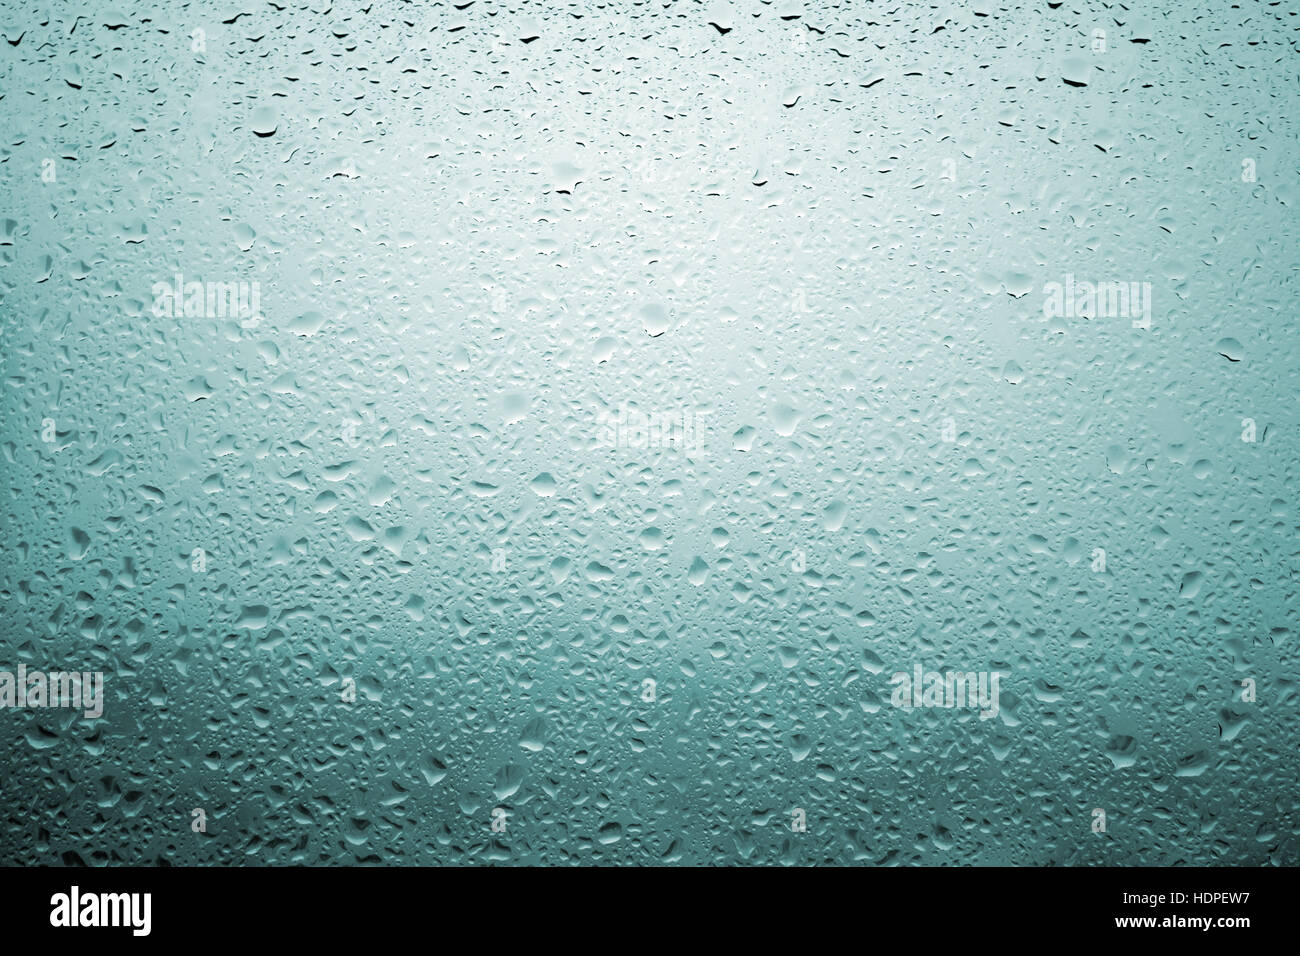 Gouttes de pluie sur une vitre de fenêtre avec paysage très diffuse de couleur bleu verdâtre Banque D'Images